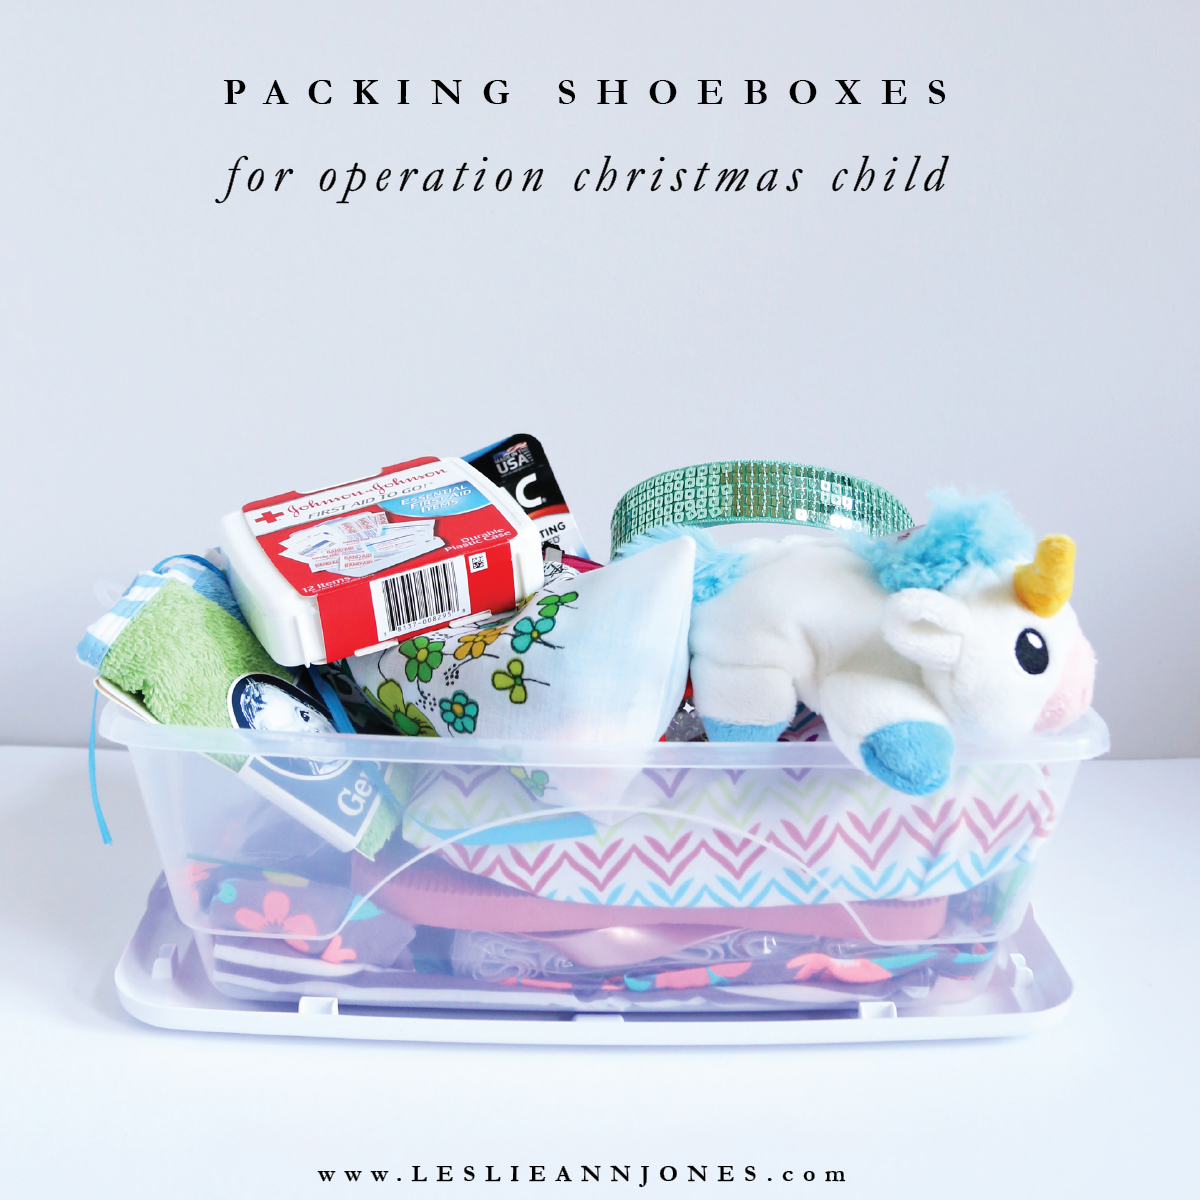 christmas child shoebox ideas